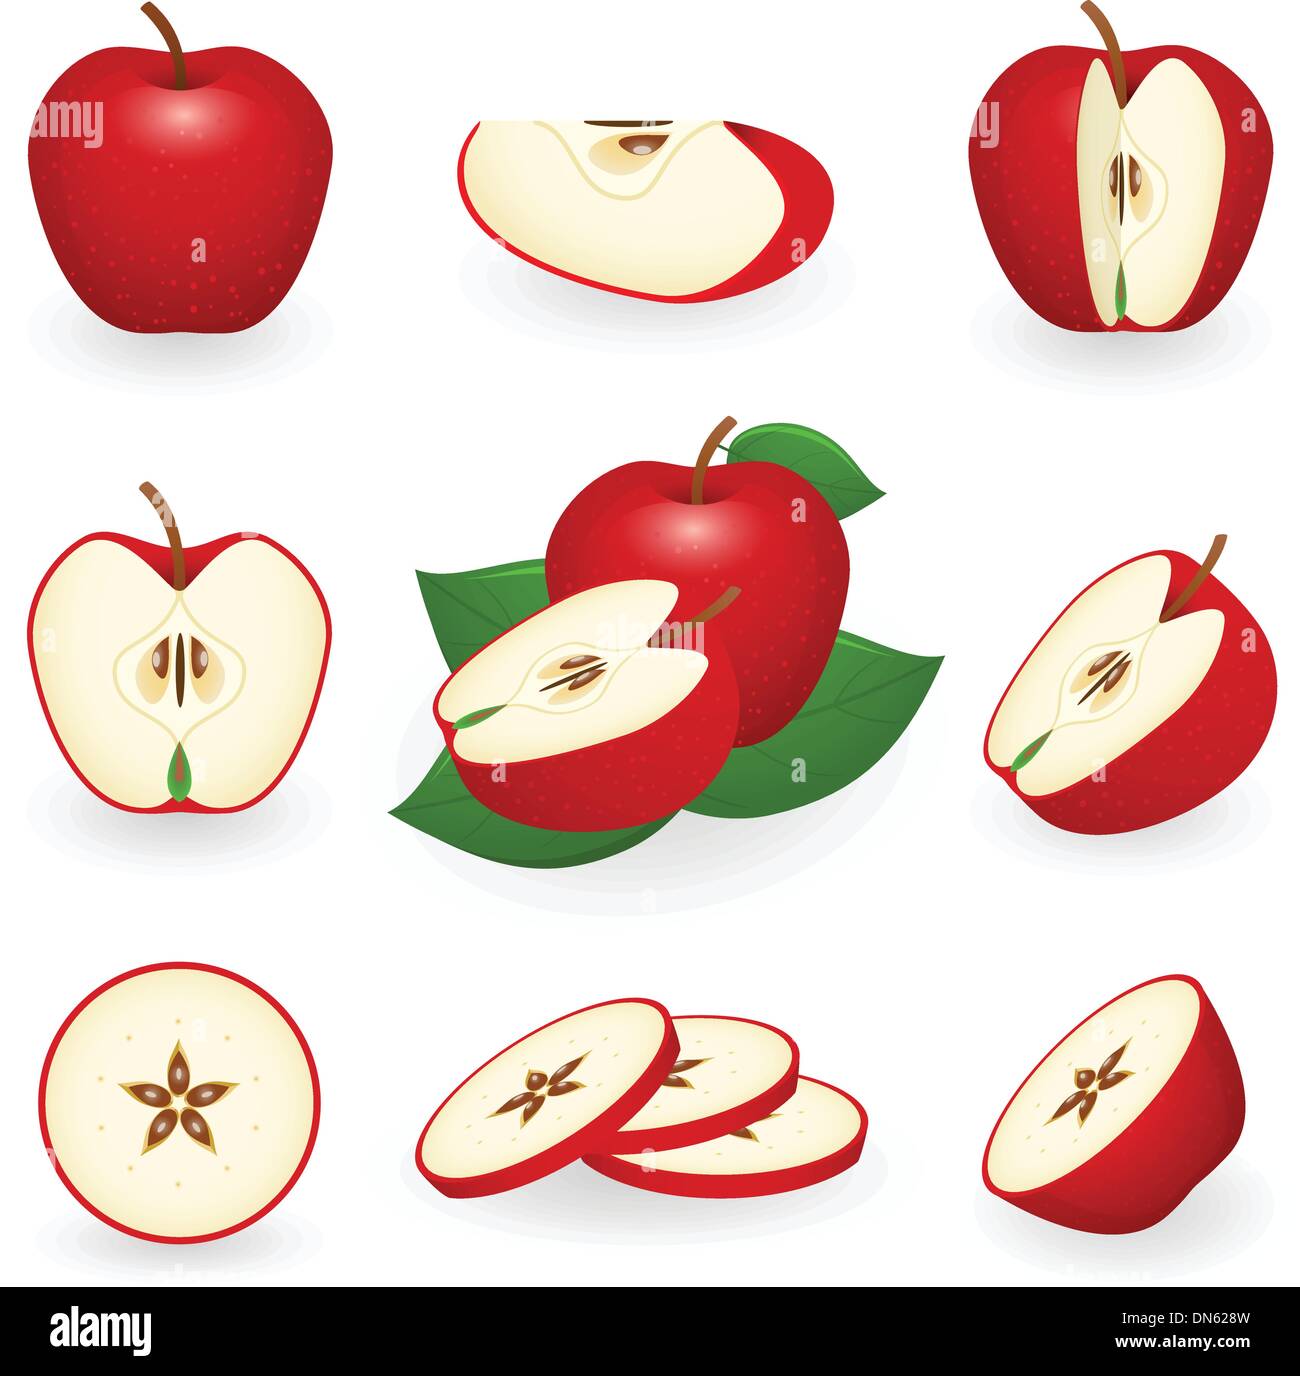 Яблоко в разрезе рисунок